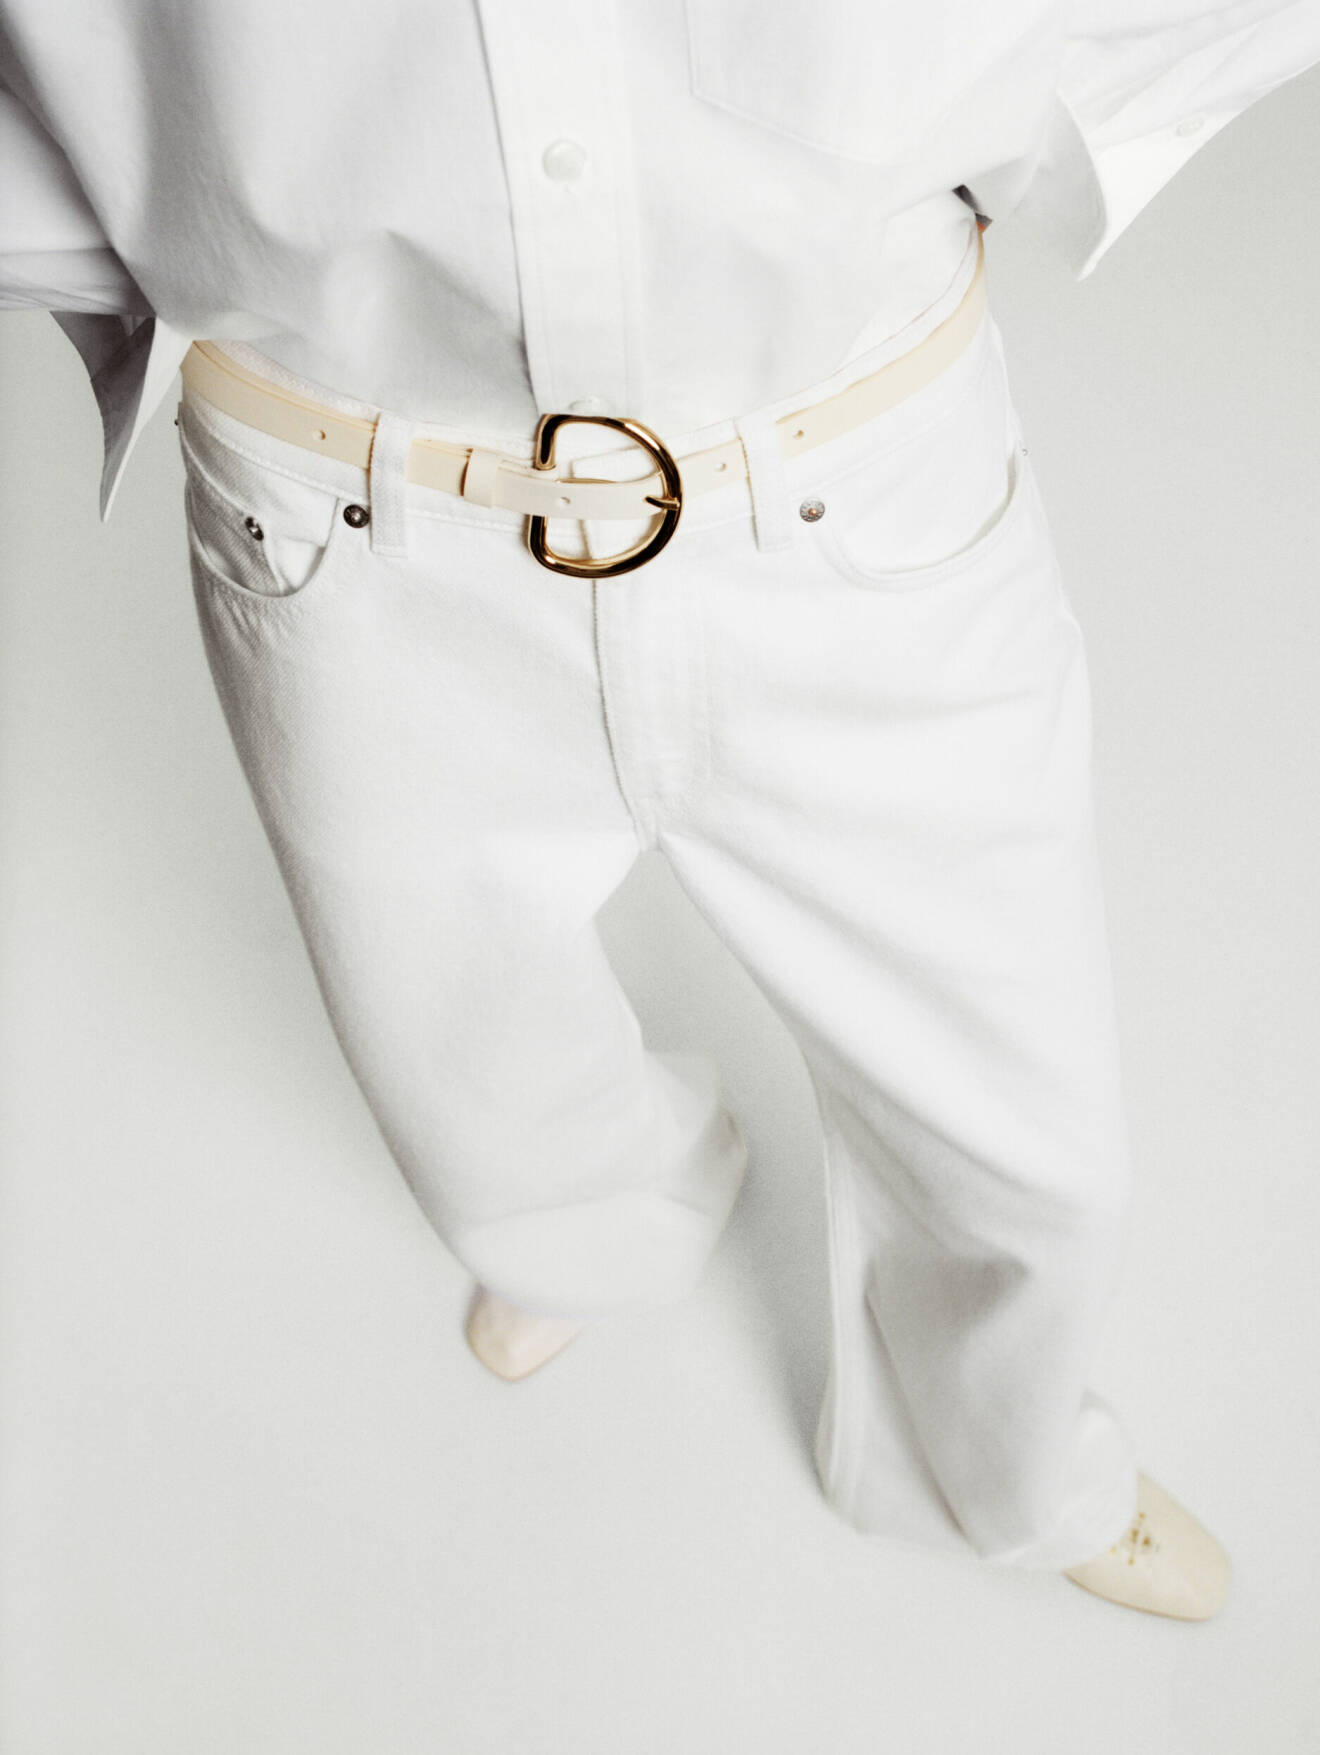 Vita jeans och ett krämvitt bälte med guldspänne.